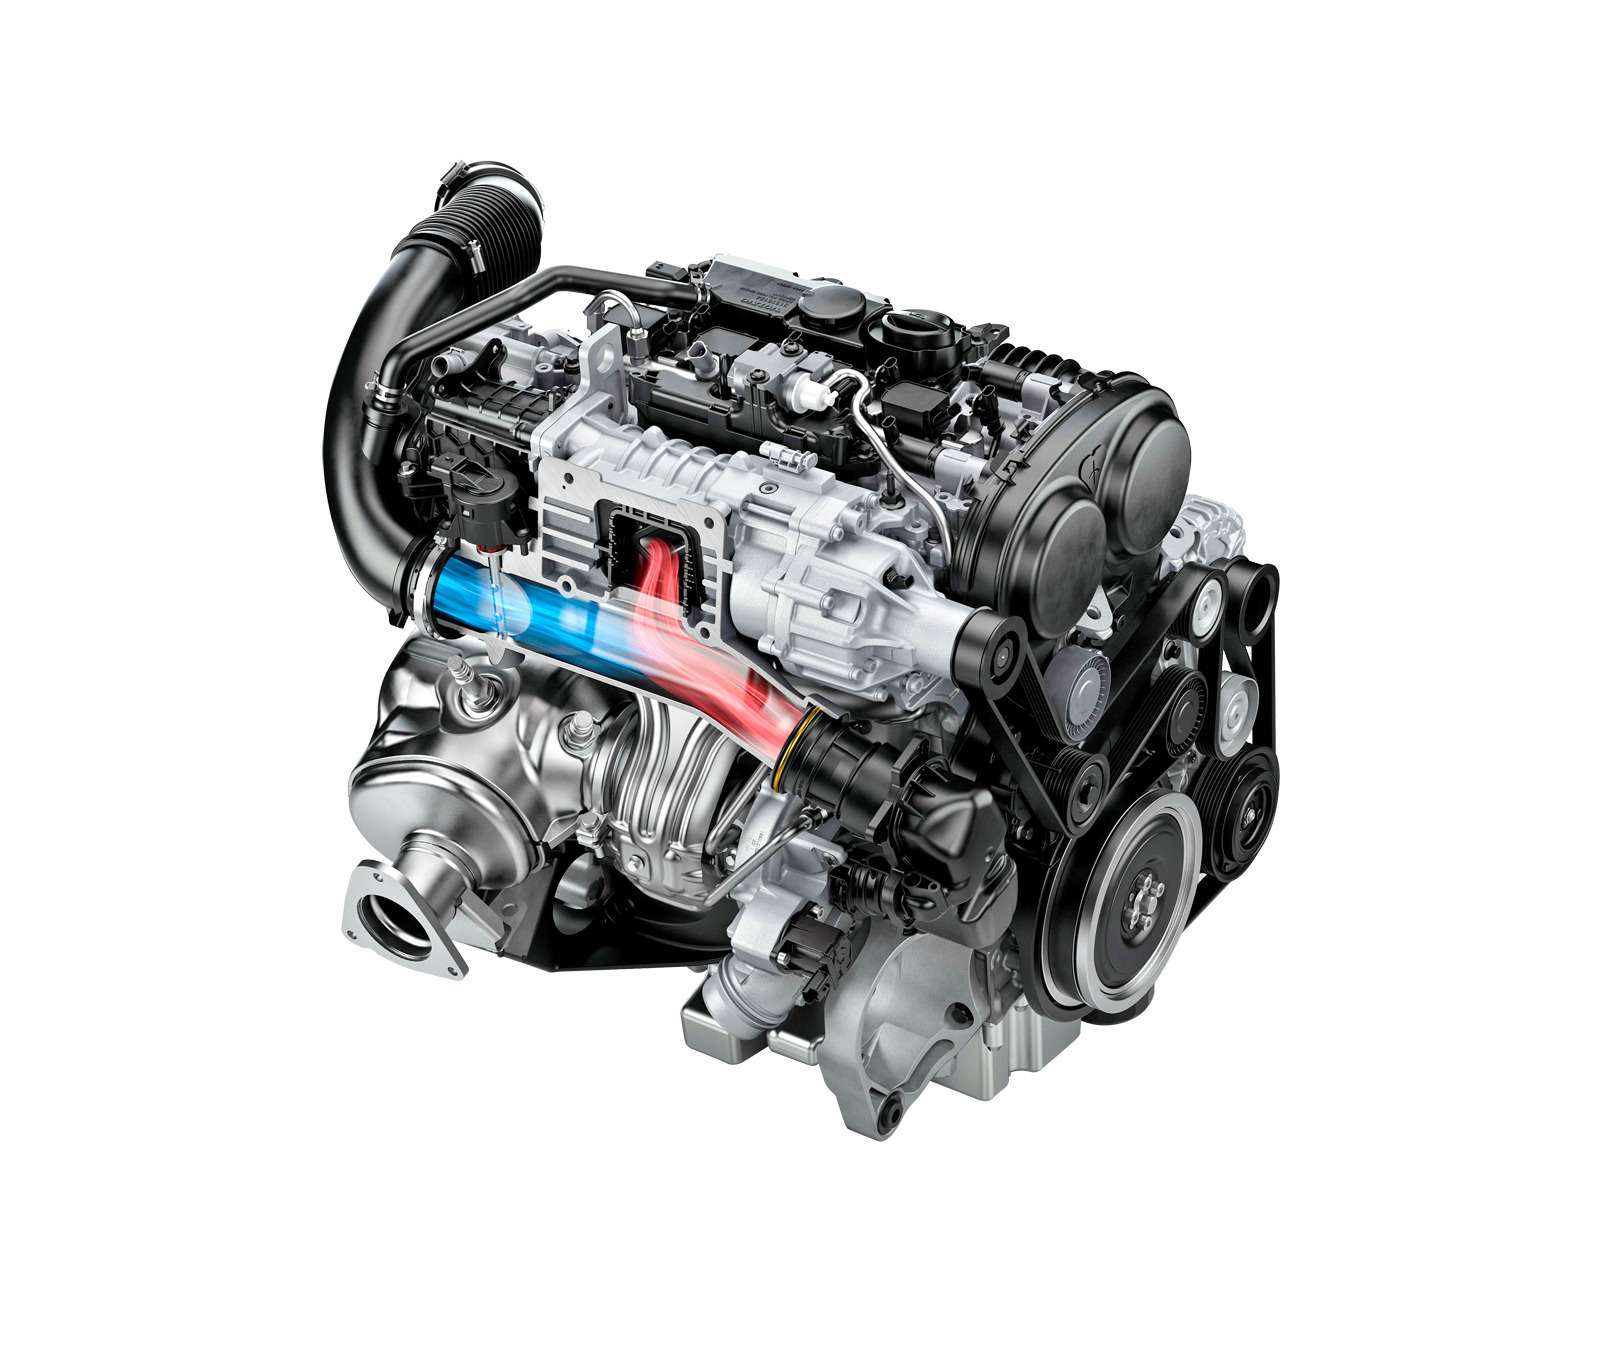 Бензиновый двигатель T6 оснащен компрессором и турбонаддувом. До 3500 об/мин они работают сообща, а на более высоких оборотах действует только турбина.